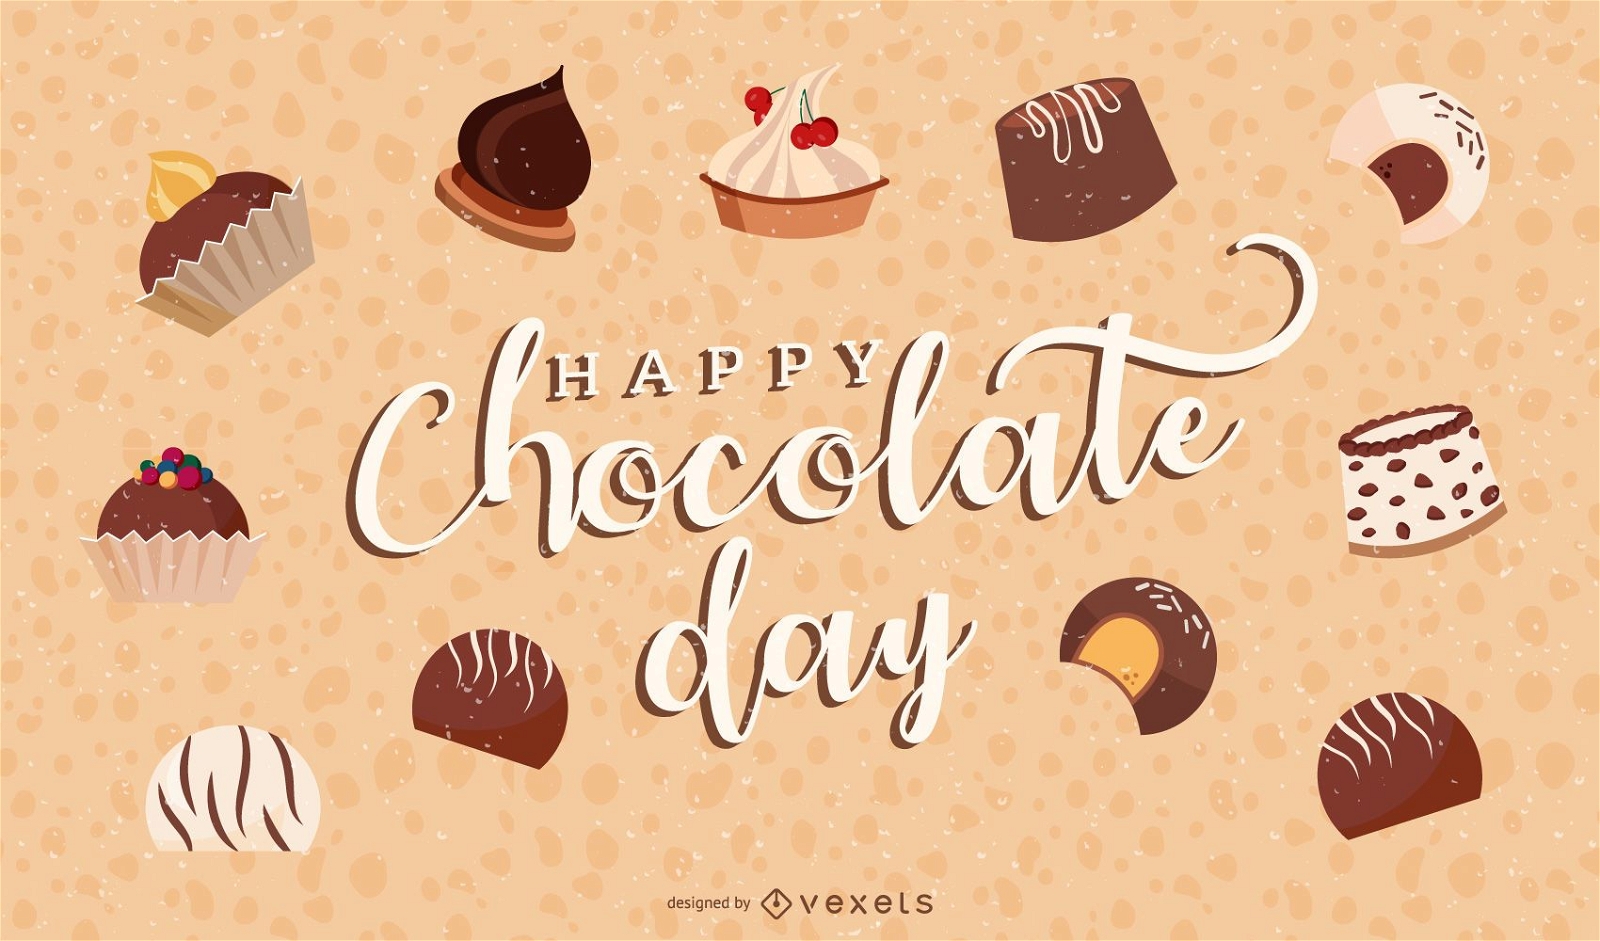 feliz dia do chocolate ilustra??o design